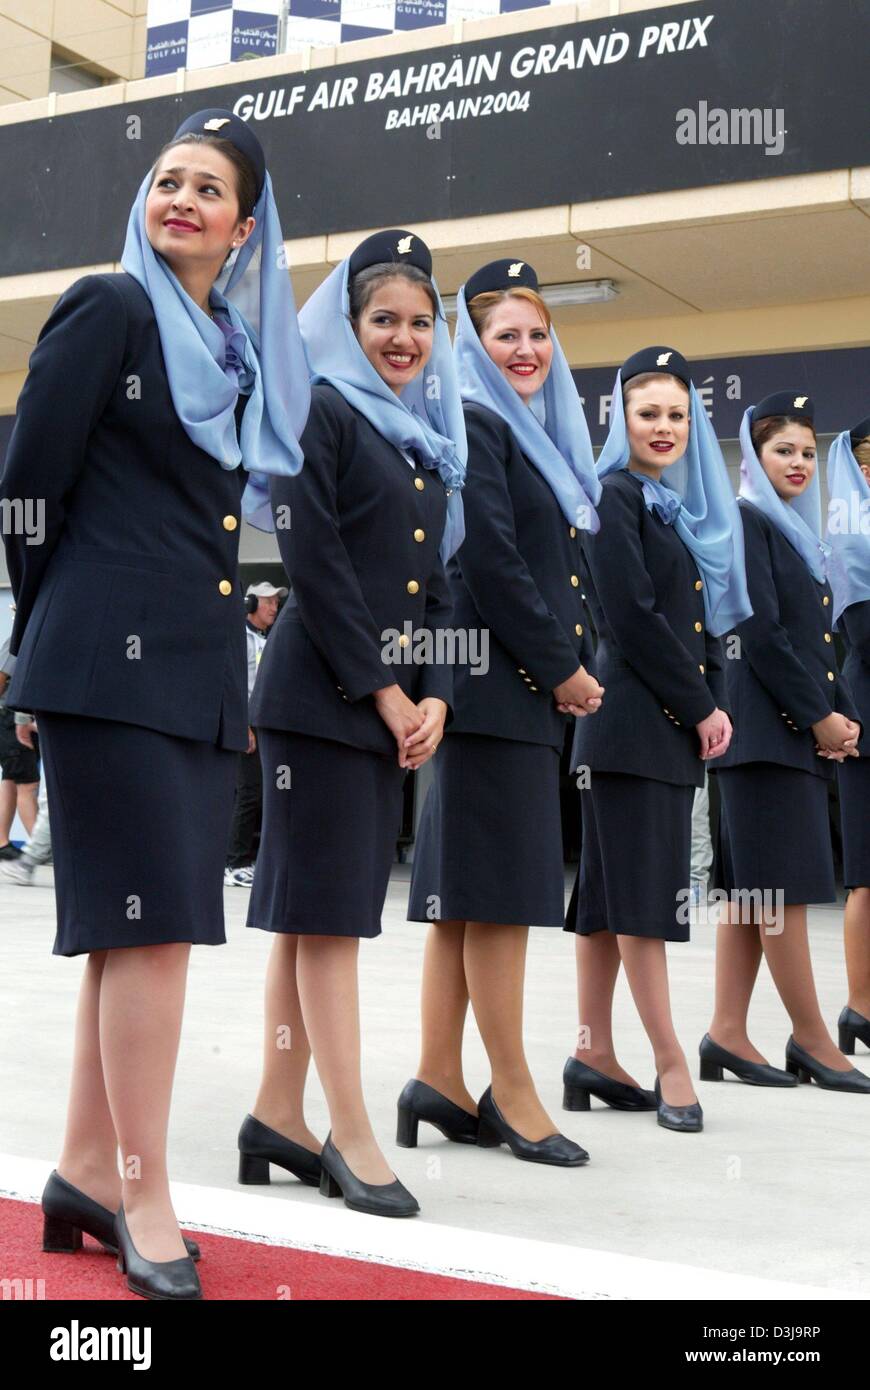 (Dpa) - Aria hostess della compagnia aerea Bahrainian servono come le ragazze della griglia sulla gara di Formula Uno via a Manama, Bahrein, 4 aprile 2004. A causa di motivi religiosi la griglia-ragazze in Bahrain devono indossare knee-gonne lunghe e un velo. Foto Stock